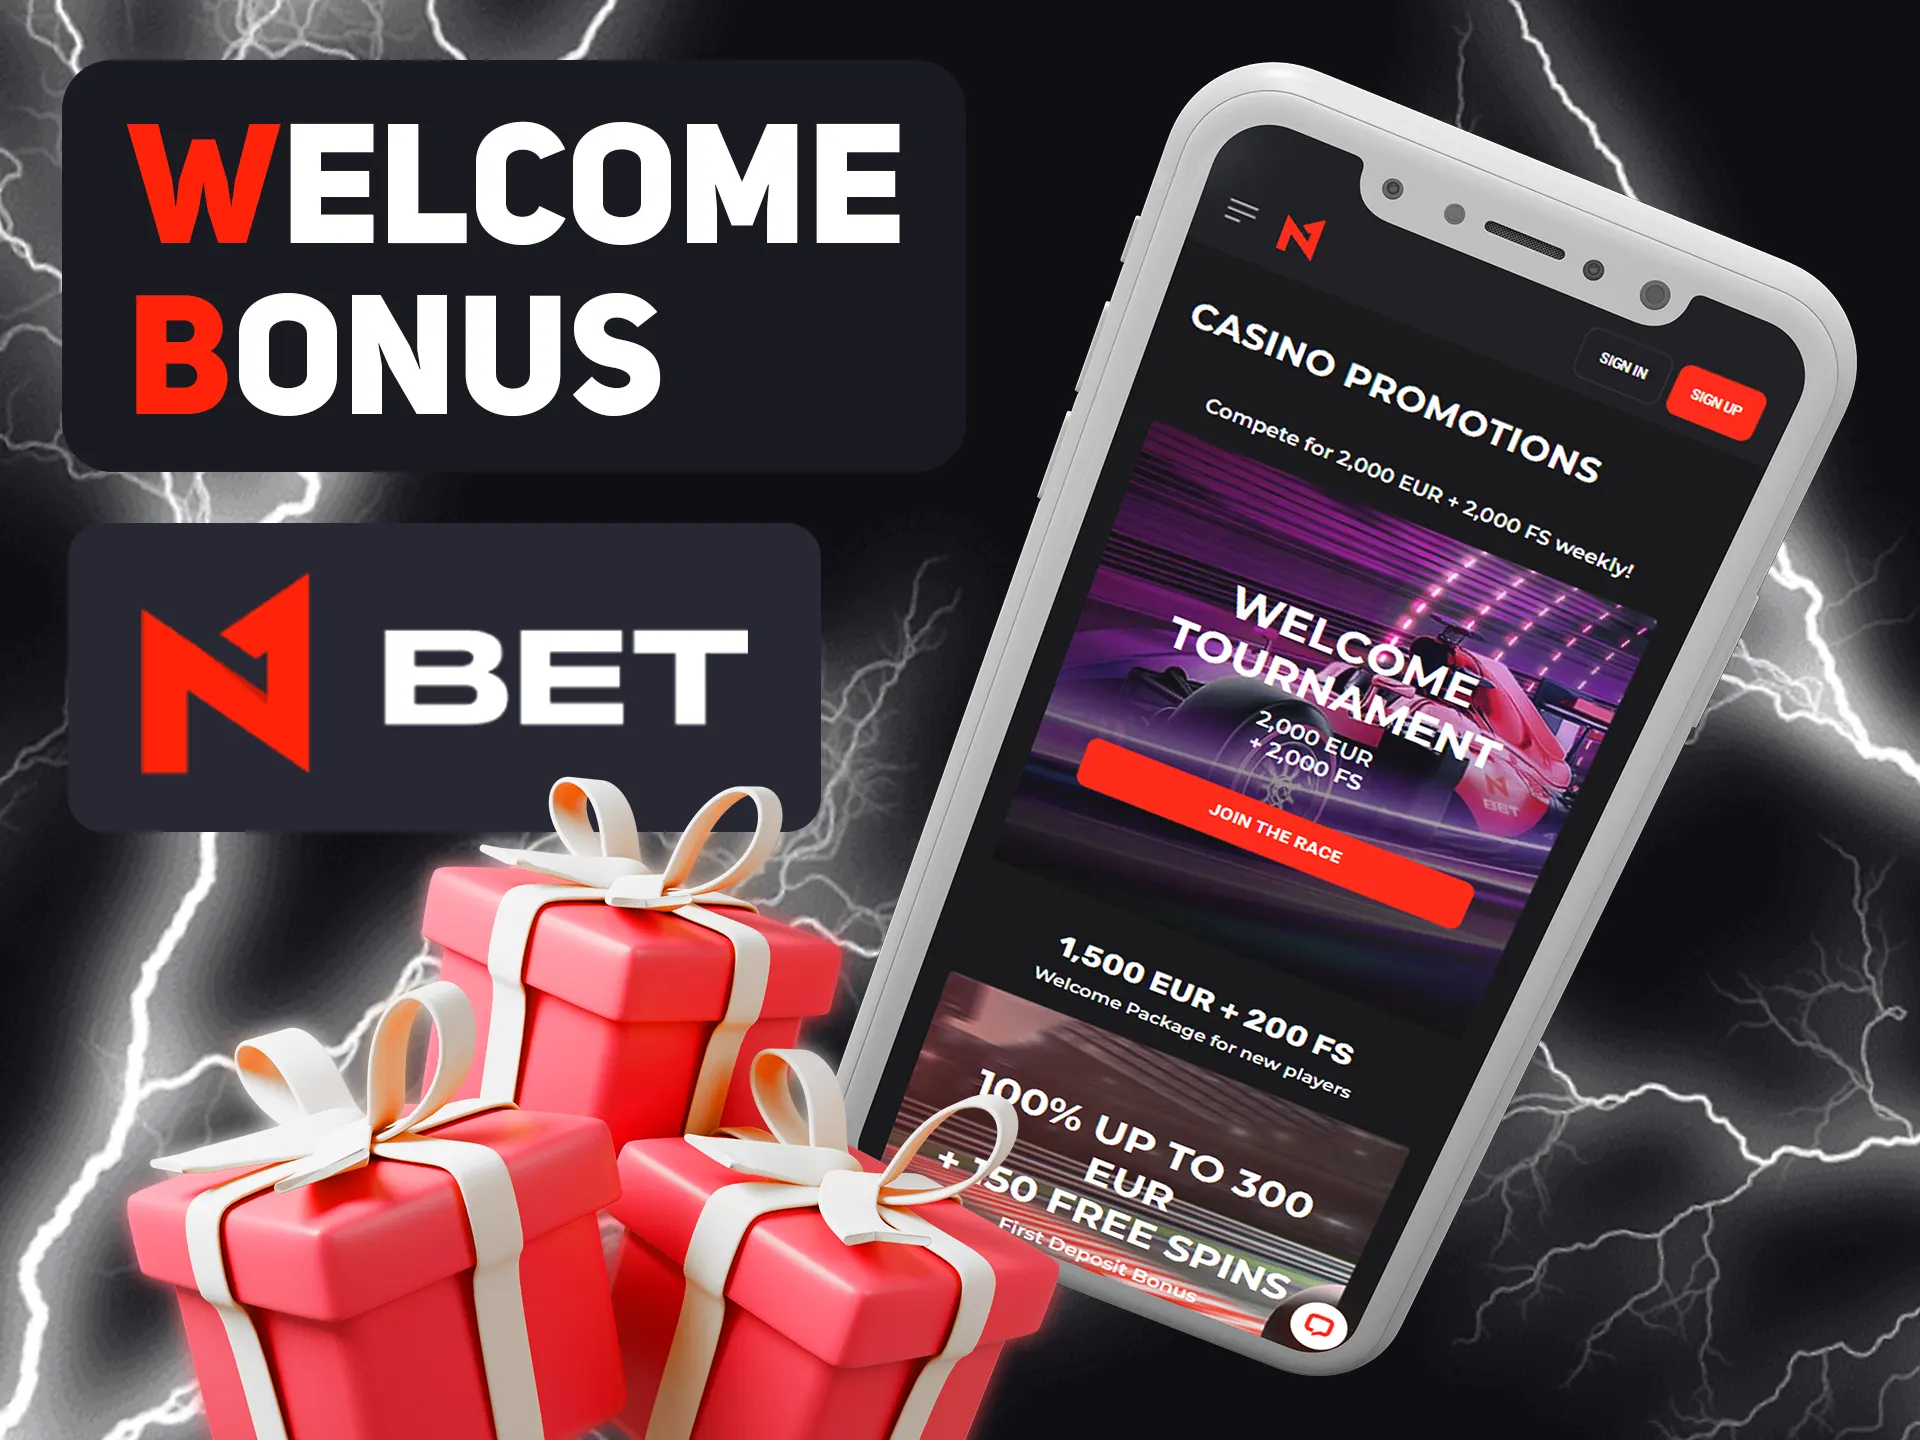 Get your N1bet app welcome bonus after succesfull registration.